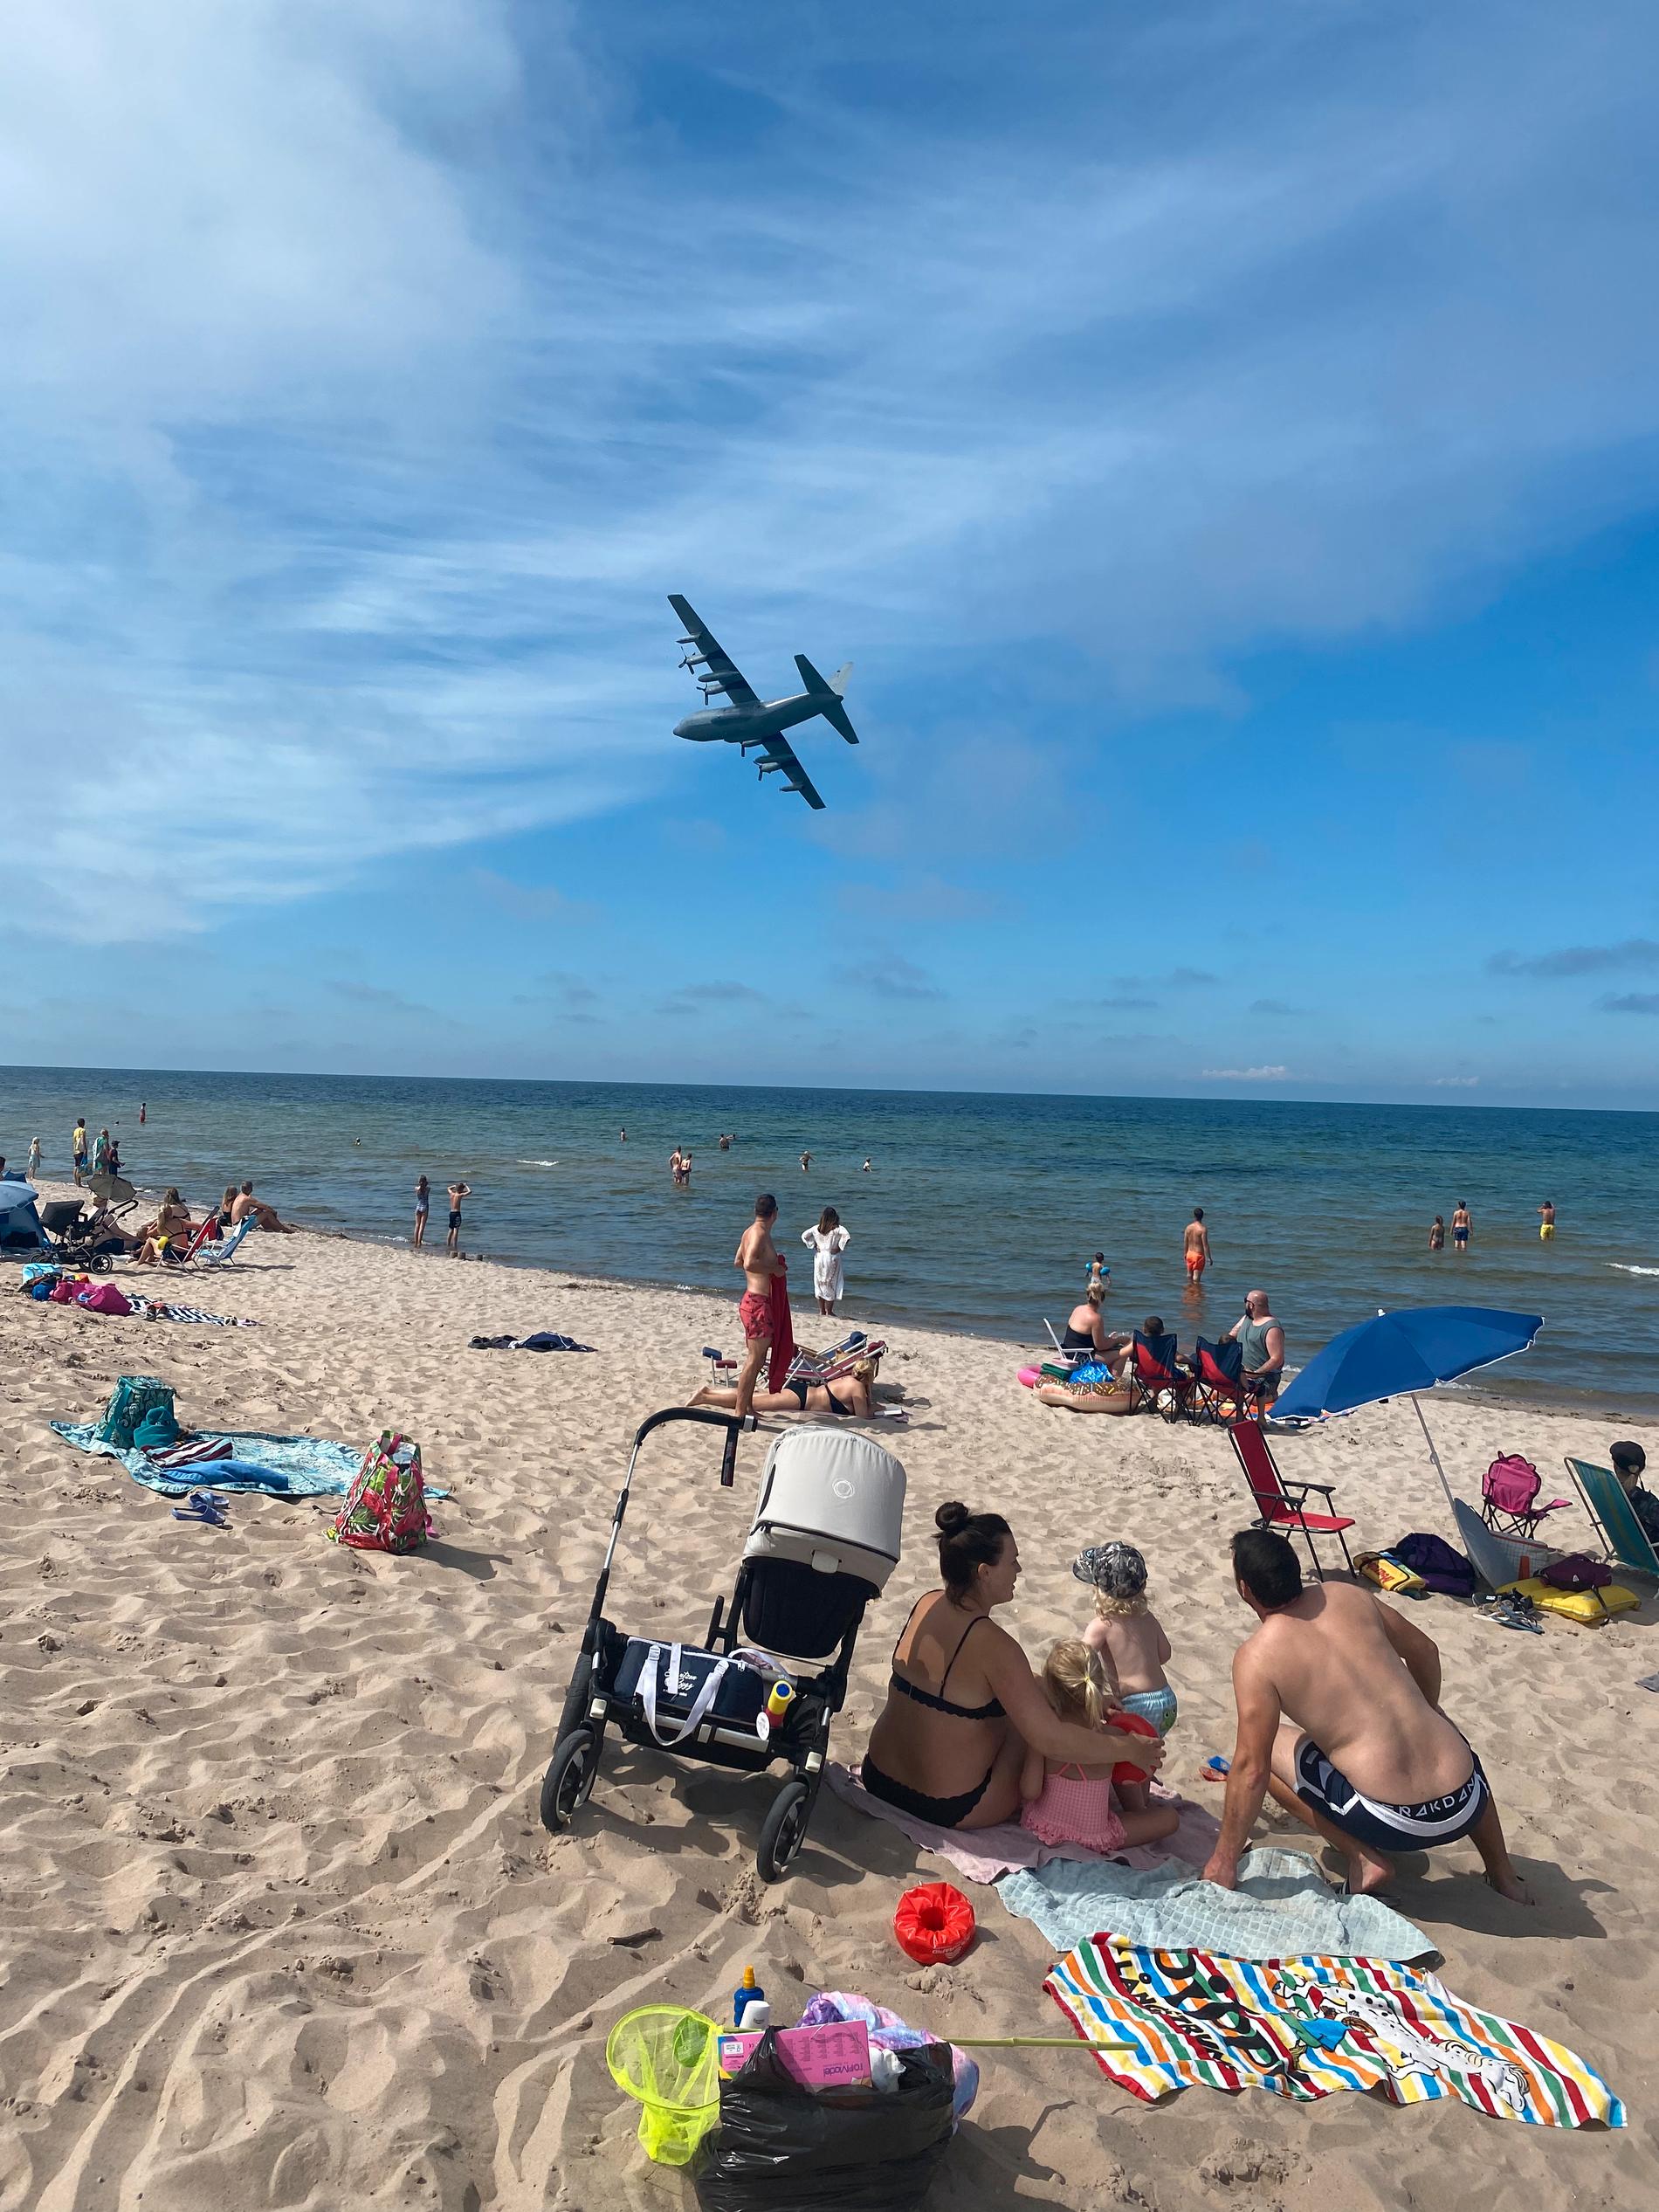 Transportflygplanet av modellen C-130 Herkules flög nära badgästerna på Tofta strand.